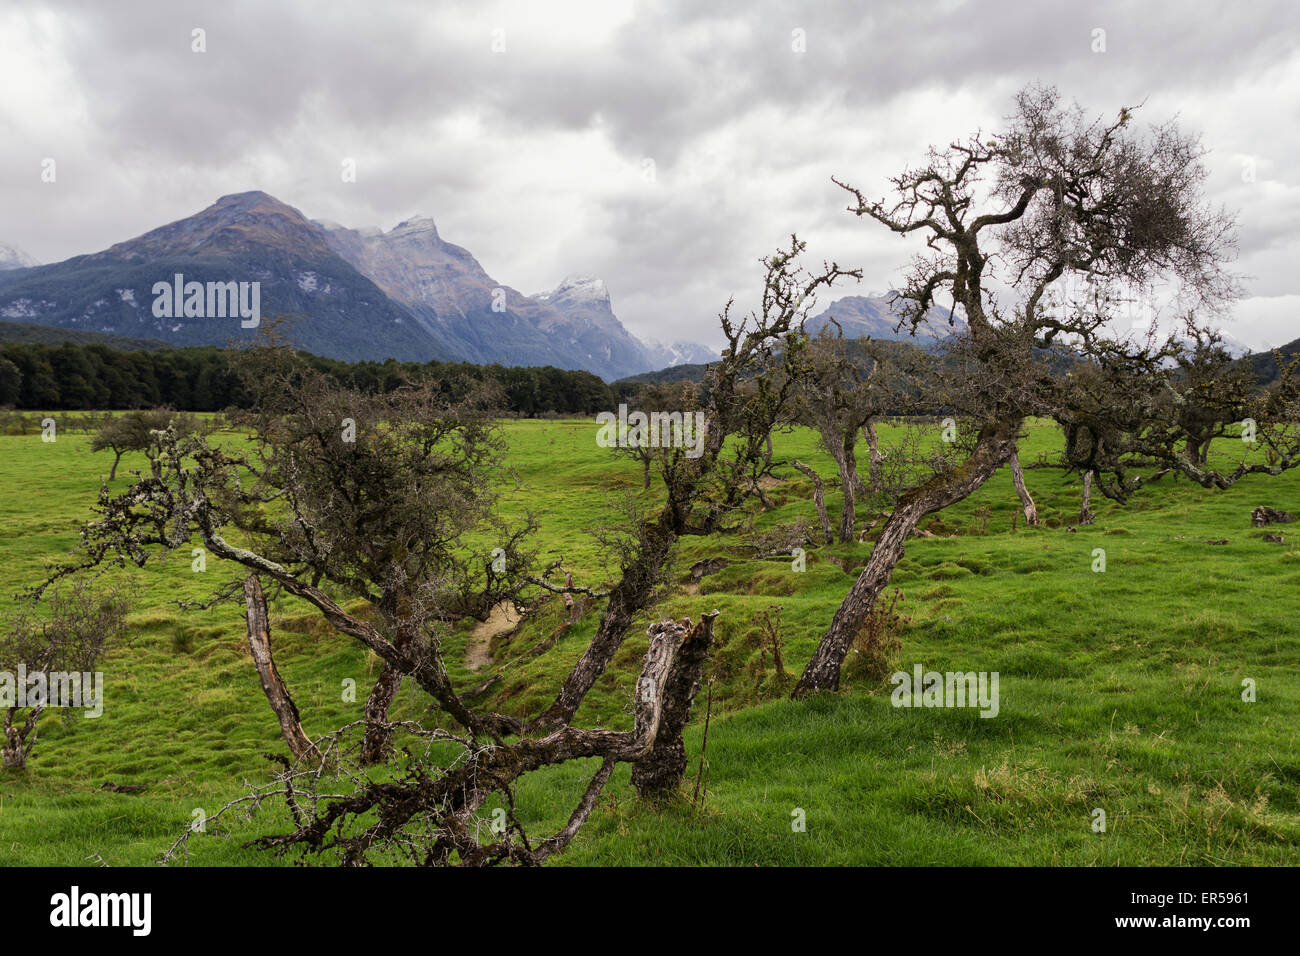 Un albero è visto in una giornata grigia a Glenorchy, Nuova Zelanda. Questa regione è stata caratterizzata nel Signore degli Anelli film. Foto Stock